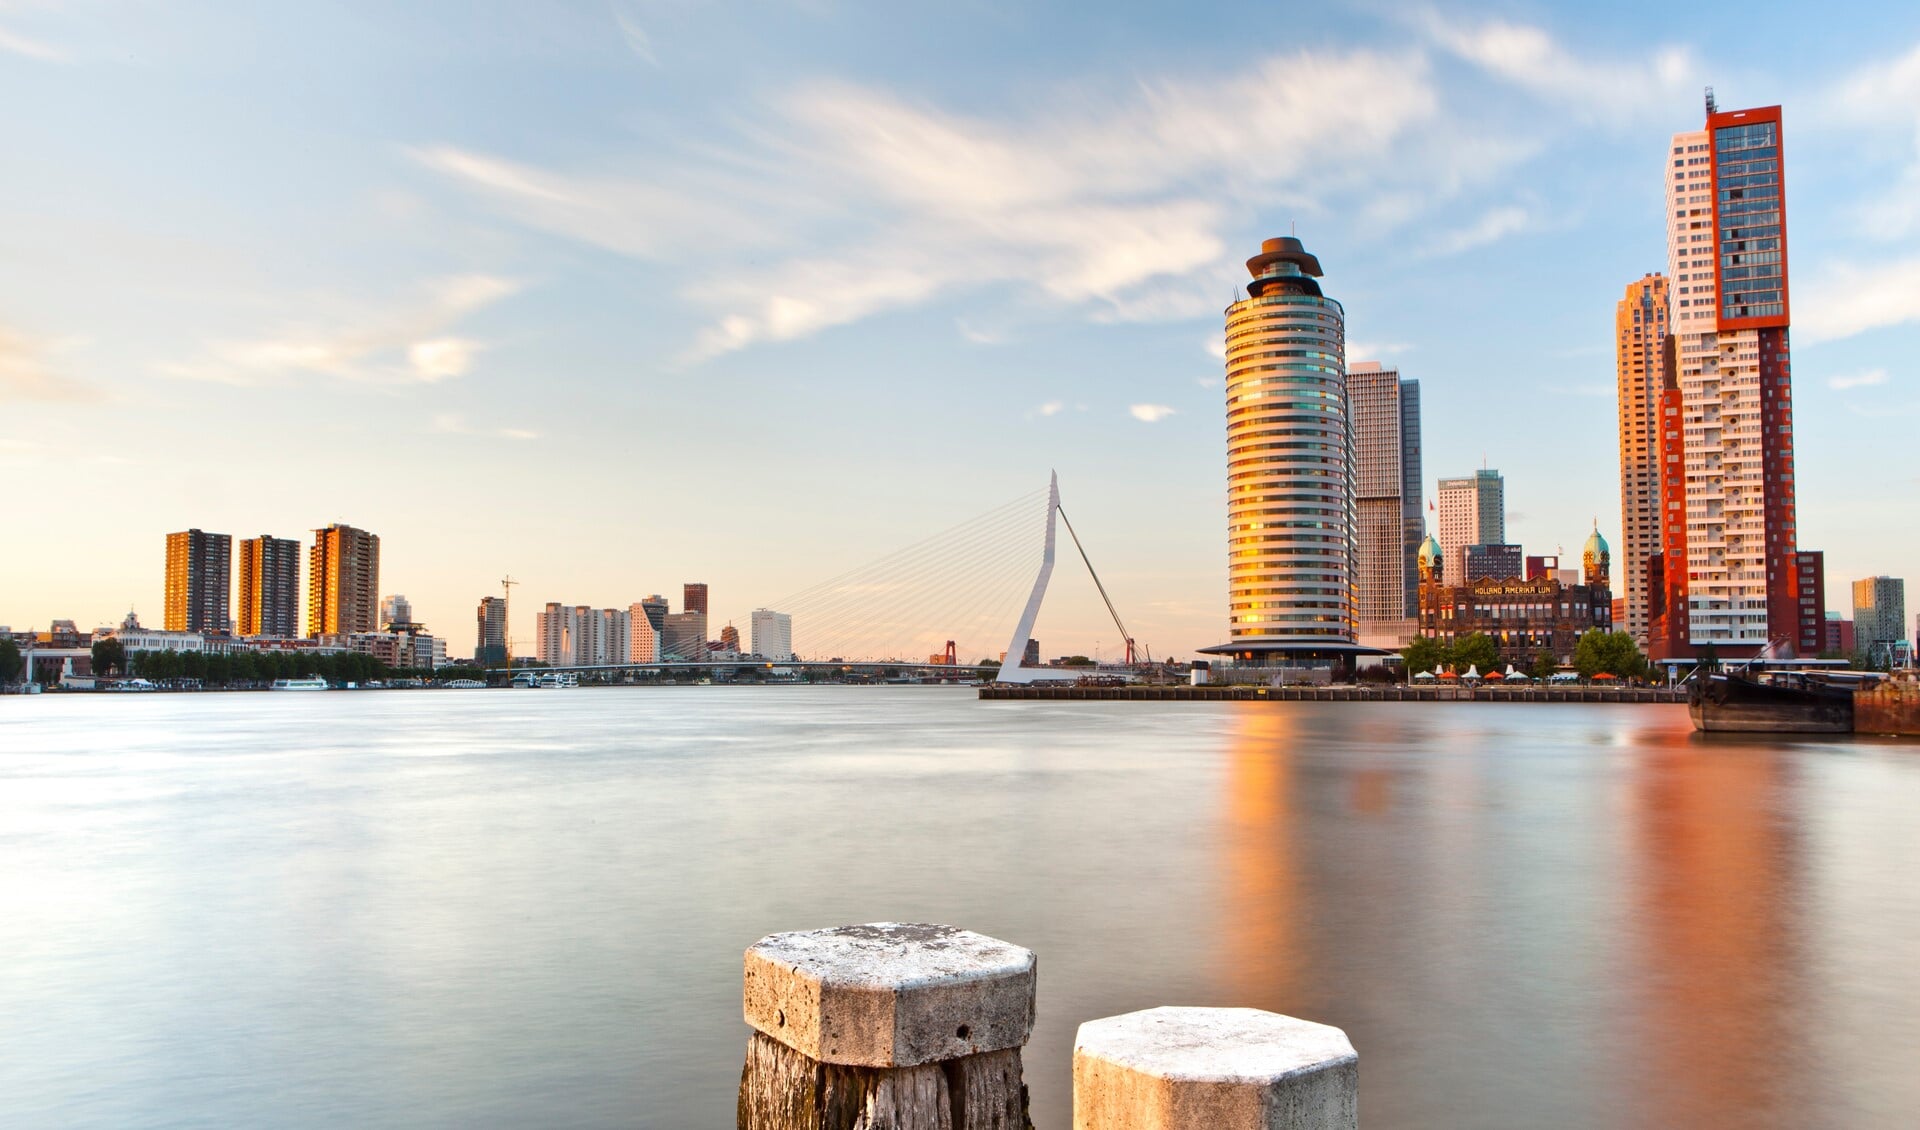 De gemeente Rotterdam heeft de beschikbaarheid van riviercruiseschepen geïnventariseerd en opties voor een aantal schepen vastgelegd. Foto: Make It Happen